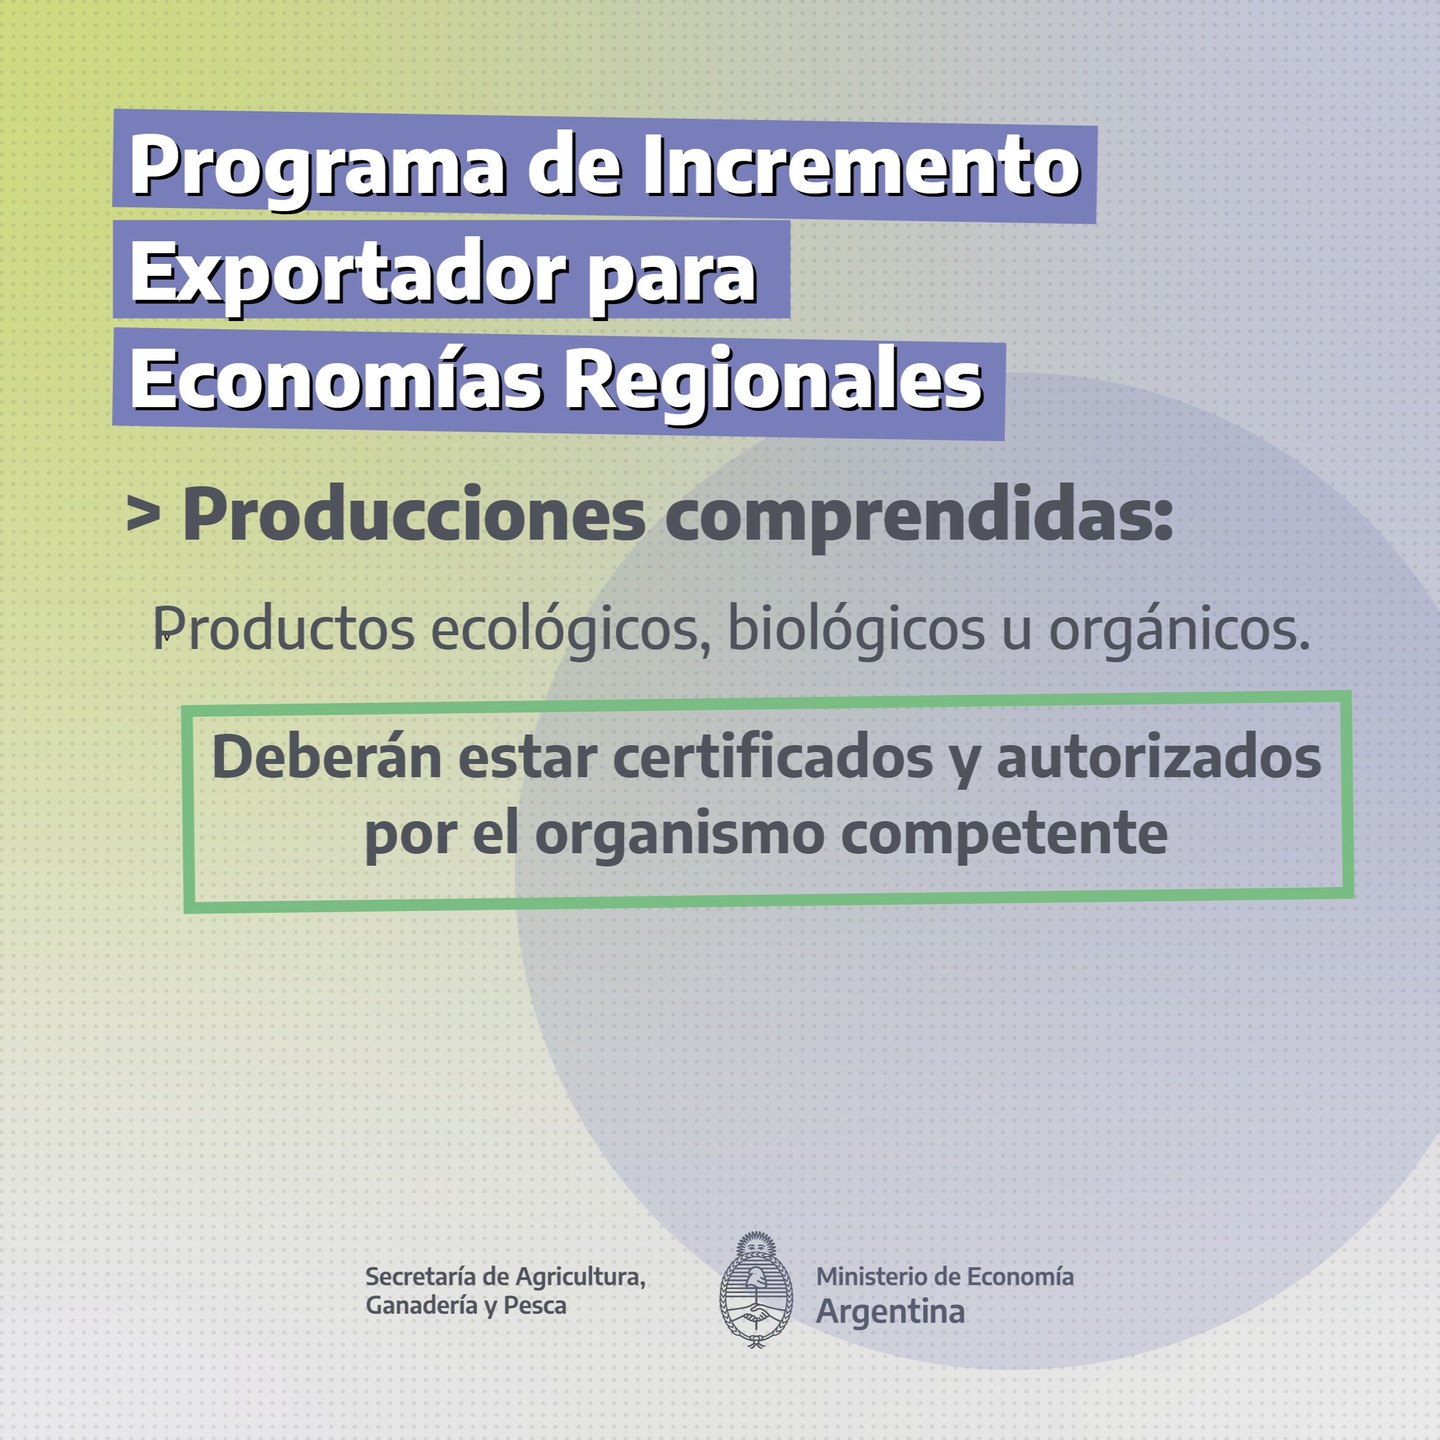 Programa de Incremento Exportador para las Economías Regionales